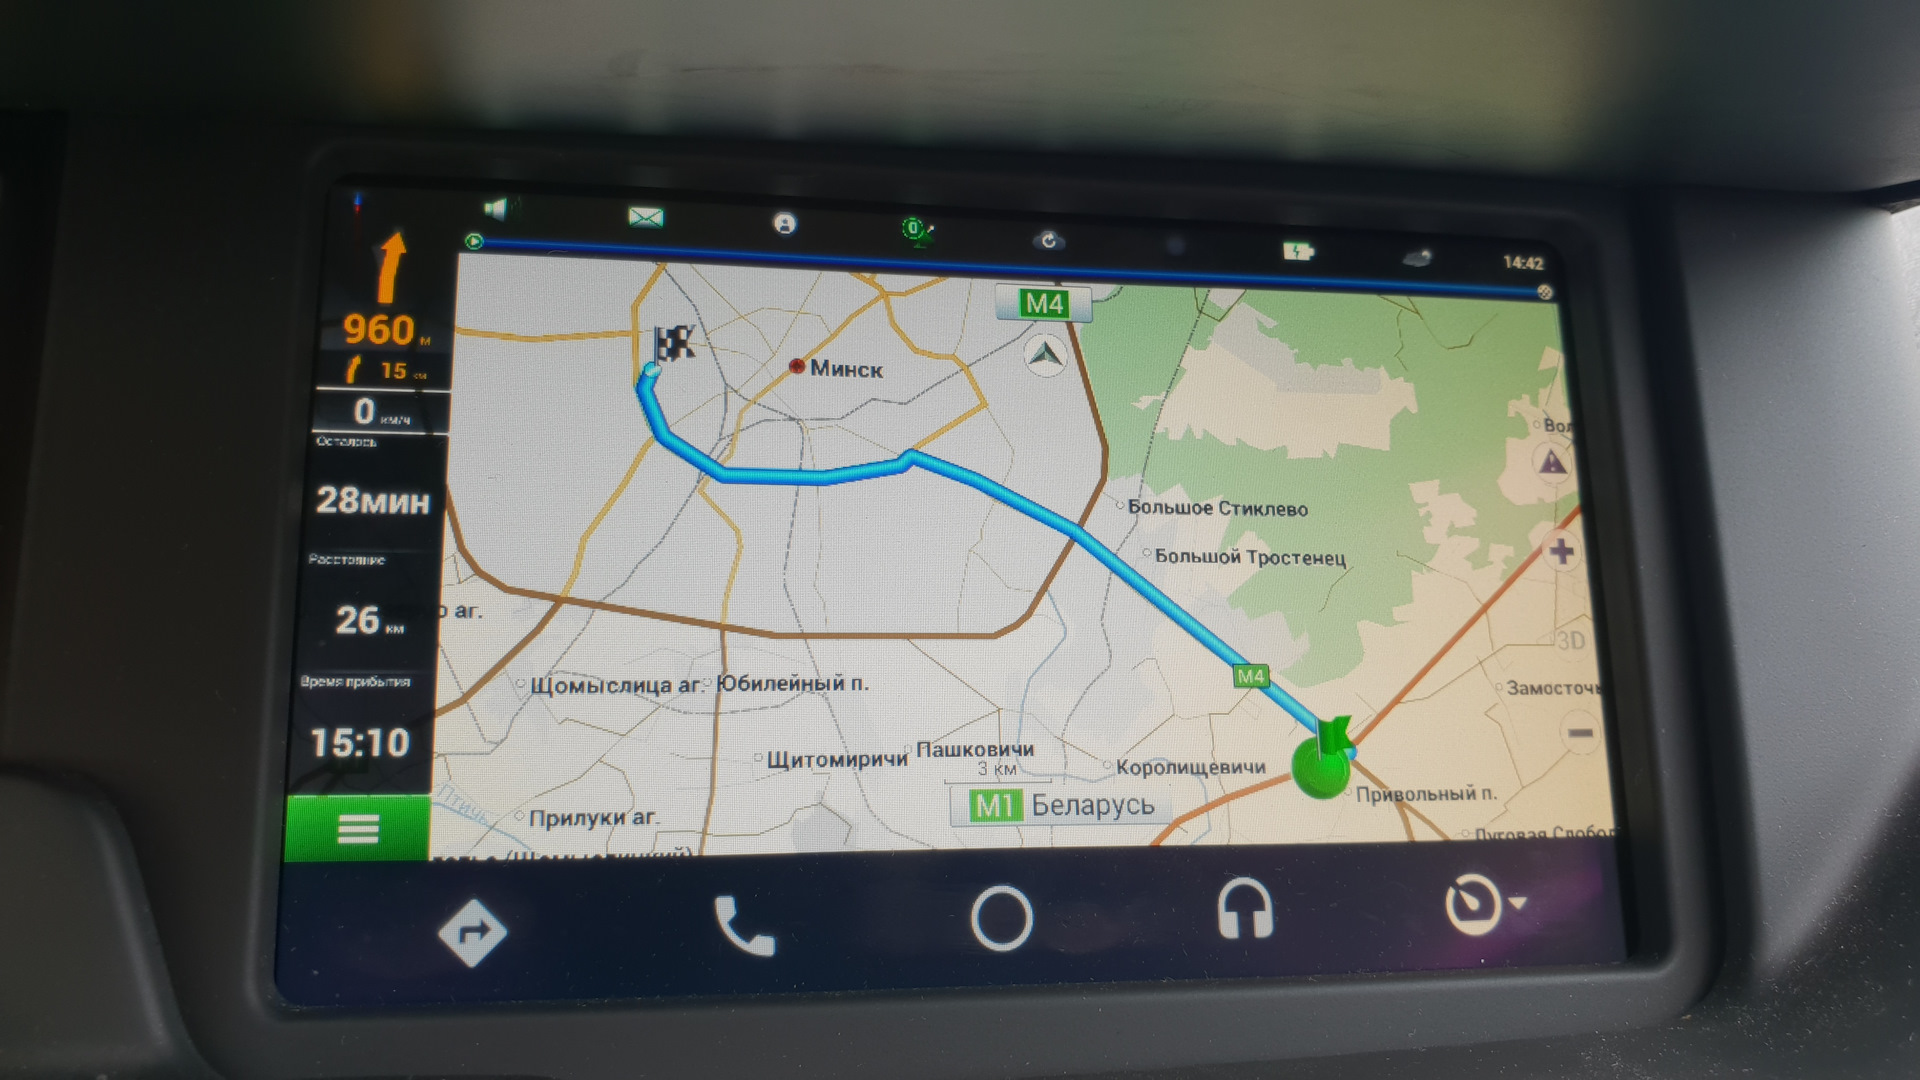 Карты для андроид автомагнитолы. Renault Kangoo 2015 магнитола с навигацией. Renault Scenic 3 магнитола 2015 с навигацией. Магнитола Android с GPS навигацией.экран стекло 2.5d для Рено Логан. Экран навигатора.